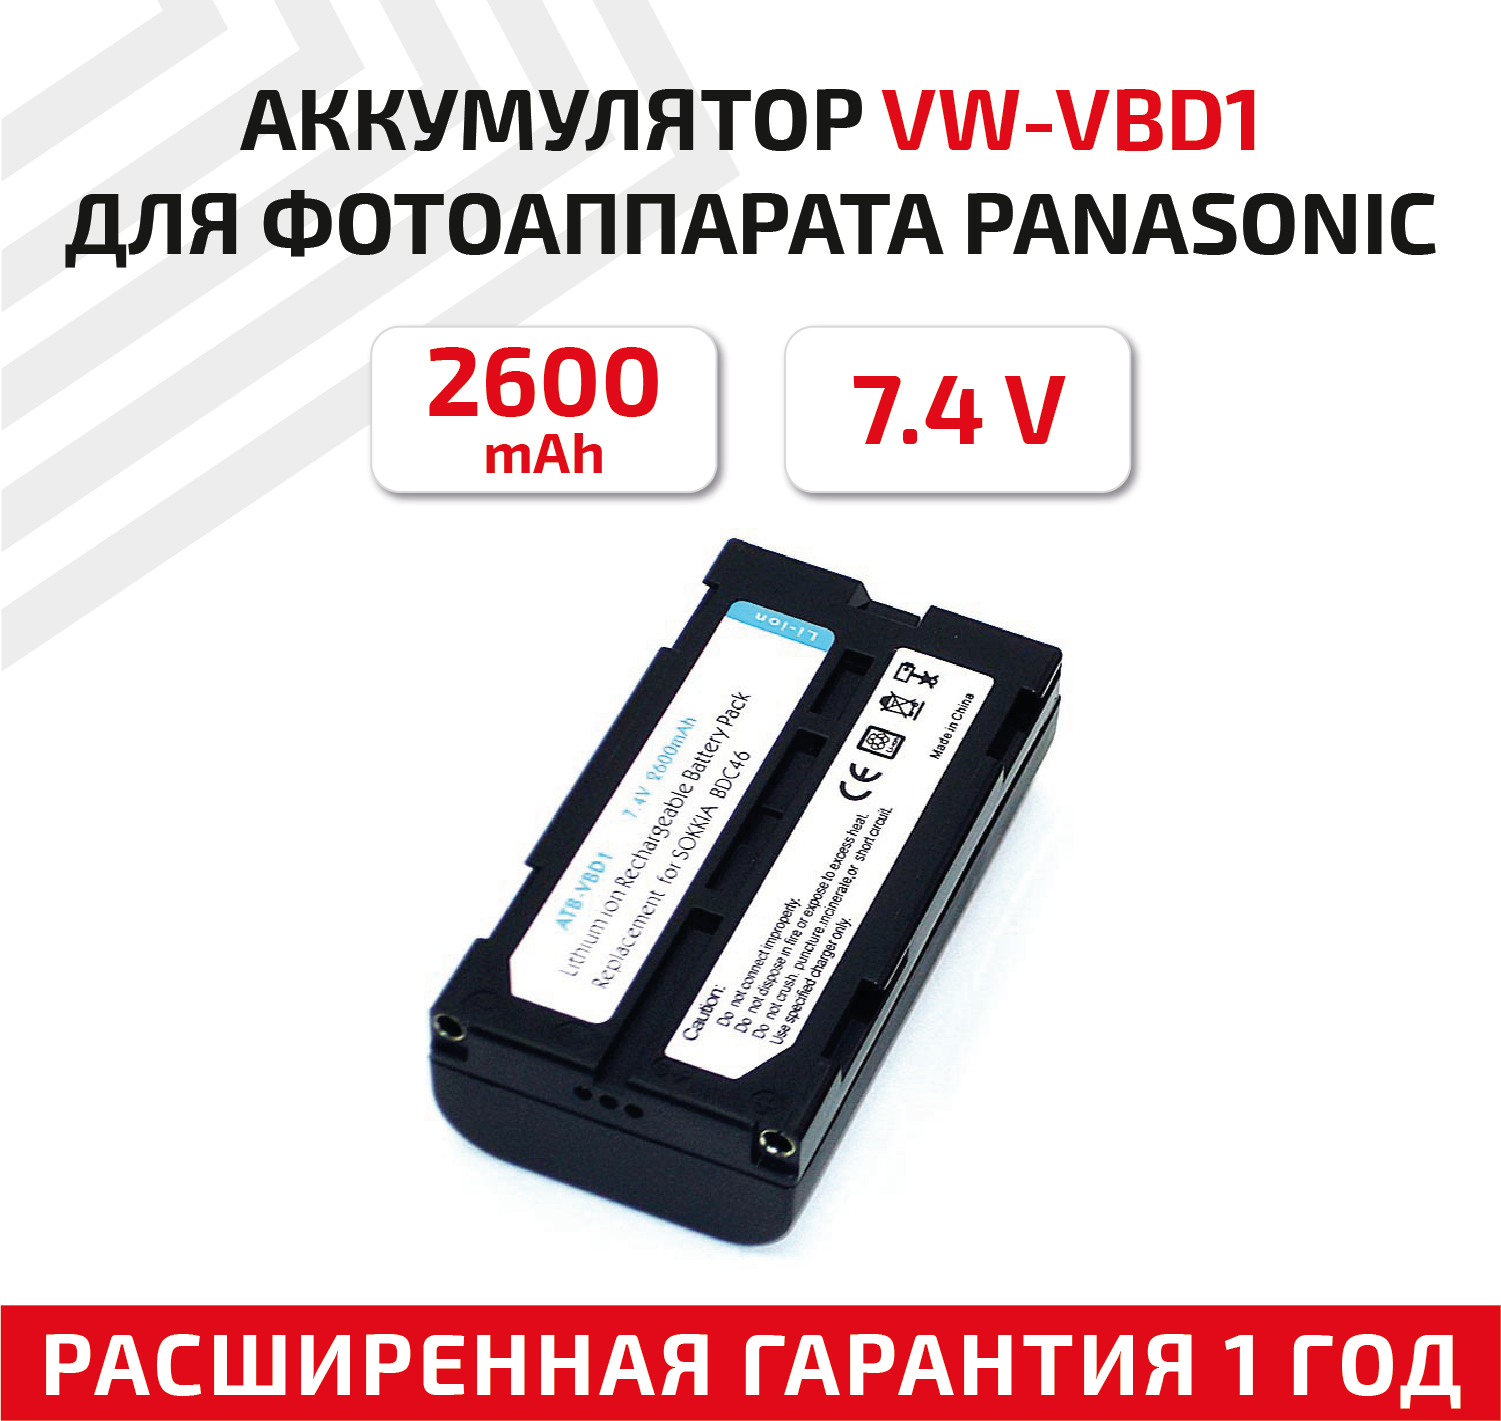 Аккумулятор (АКБ, аккумуляторная батарея) VW-VBD1 для видеокамеры Panasonic AG-BP, Hitachi VM, D, E, H, 7.4В, 2600мАч, Li-Ion